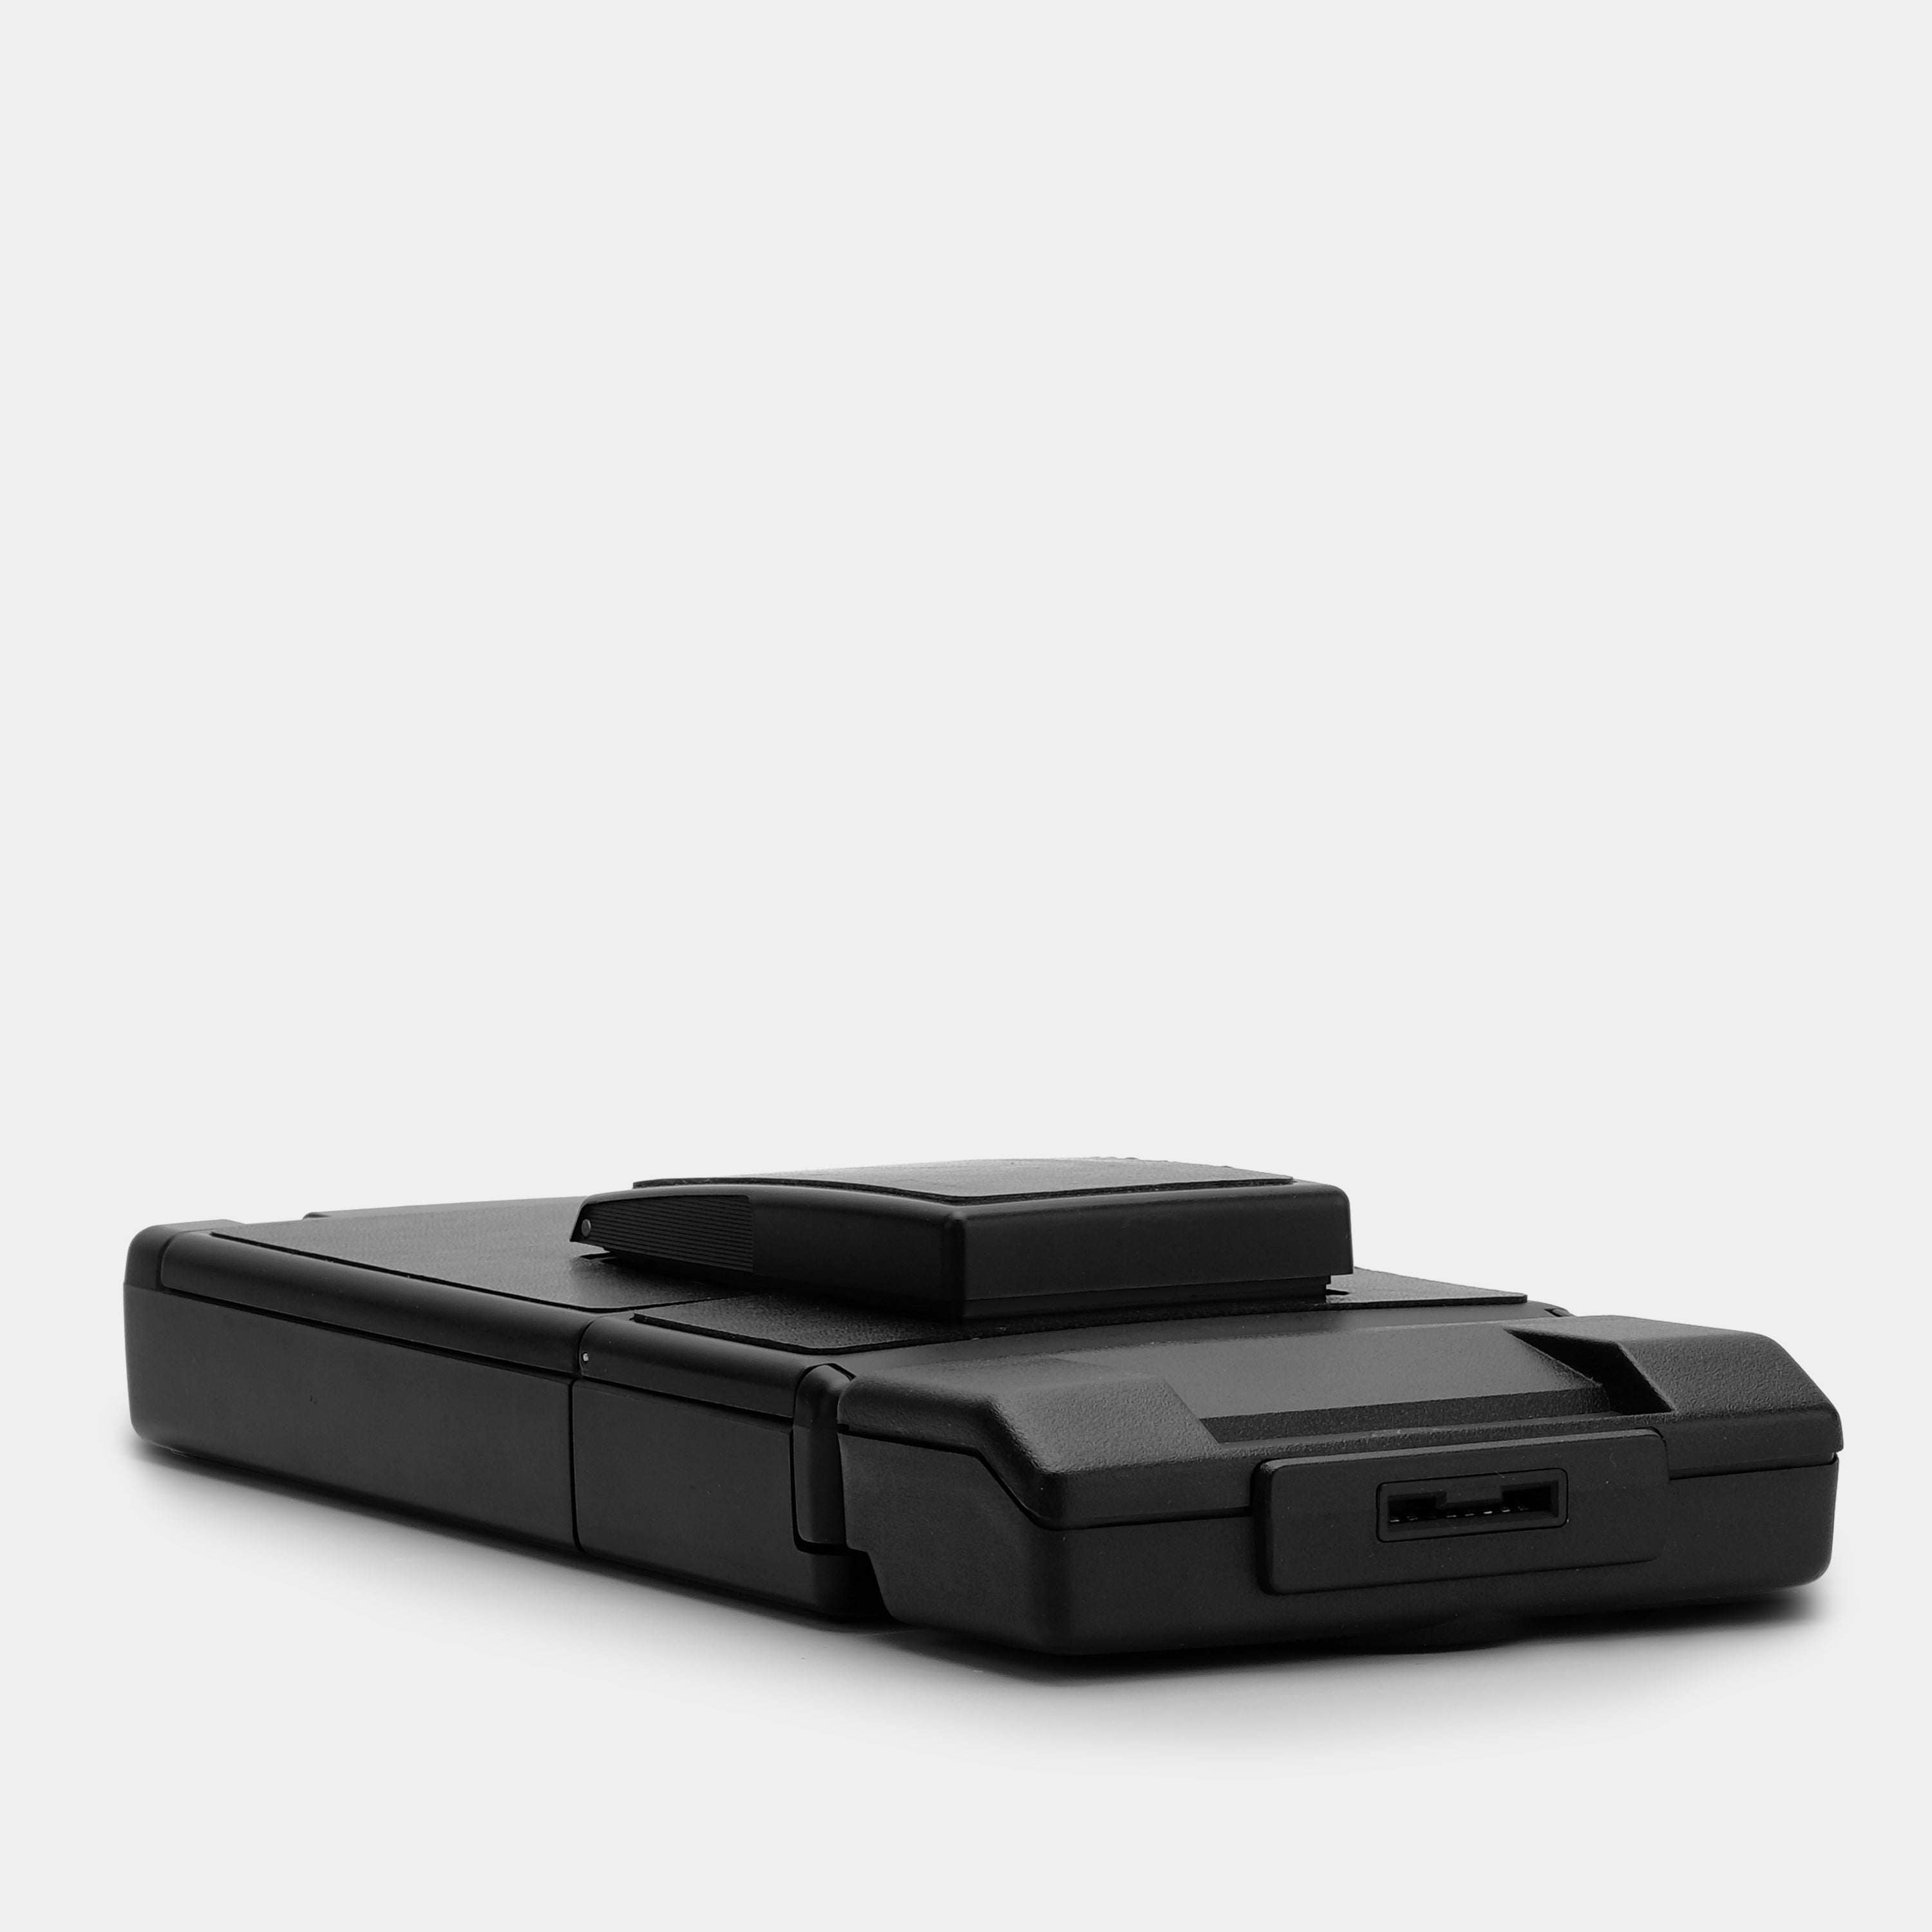 Polaroid SX-70 Sonar Autofocus Black Folding Instant Film Camera